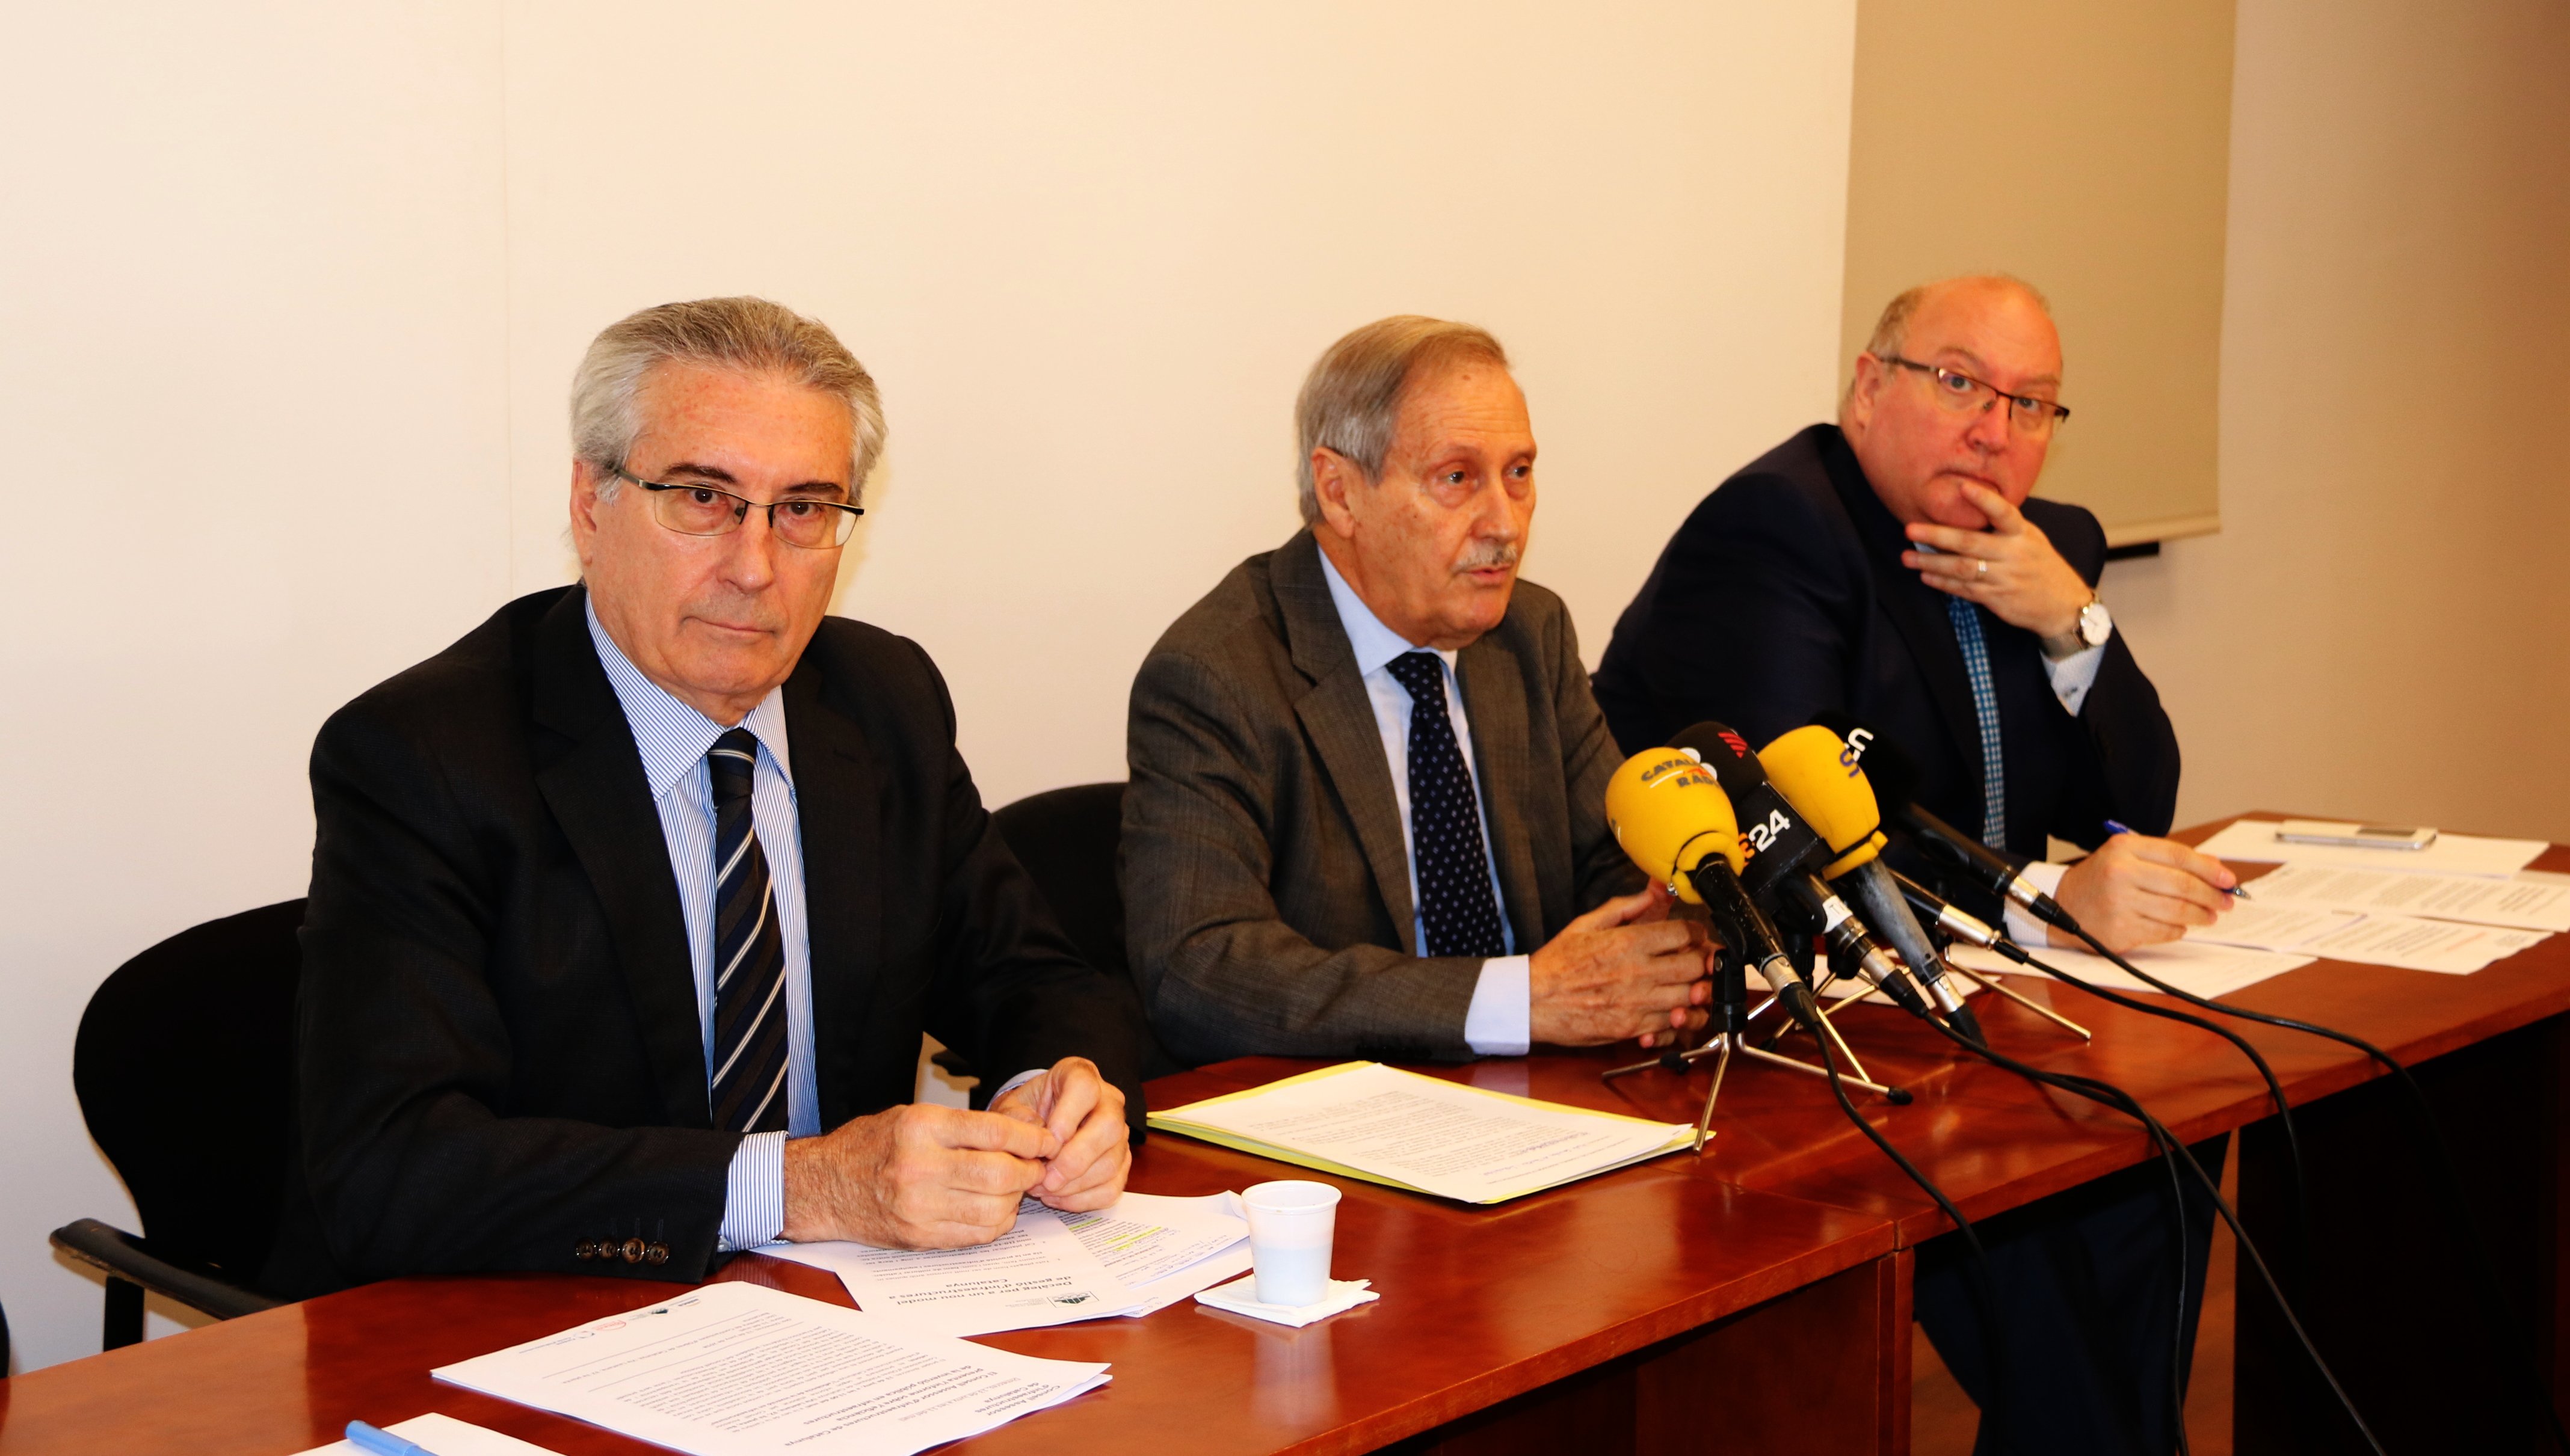 El Consell Assessor d'Infraestructures reclama que "es reactivi l'obra aturada" a Catalunya